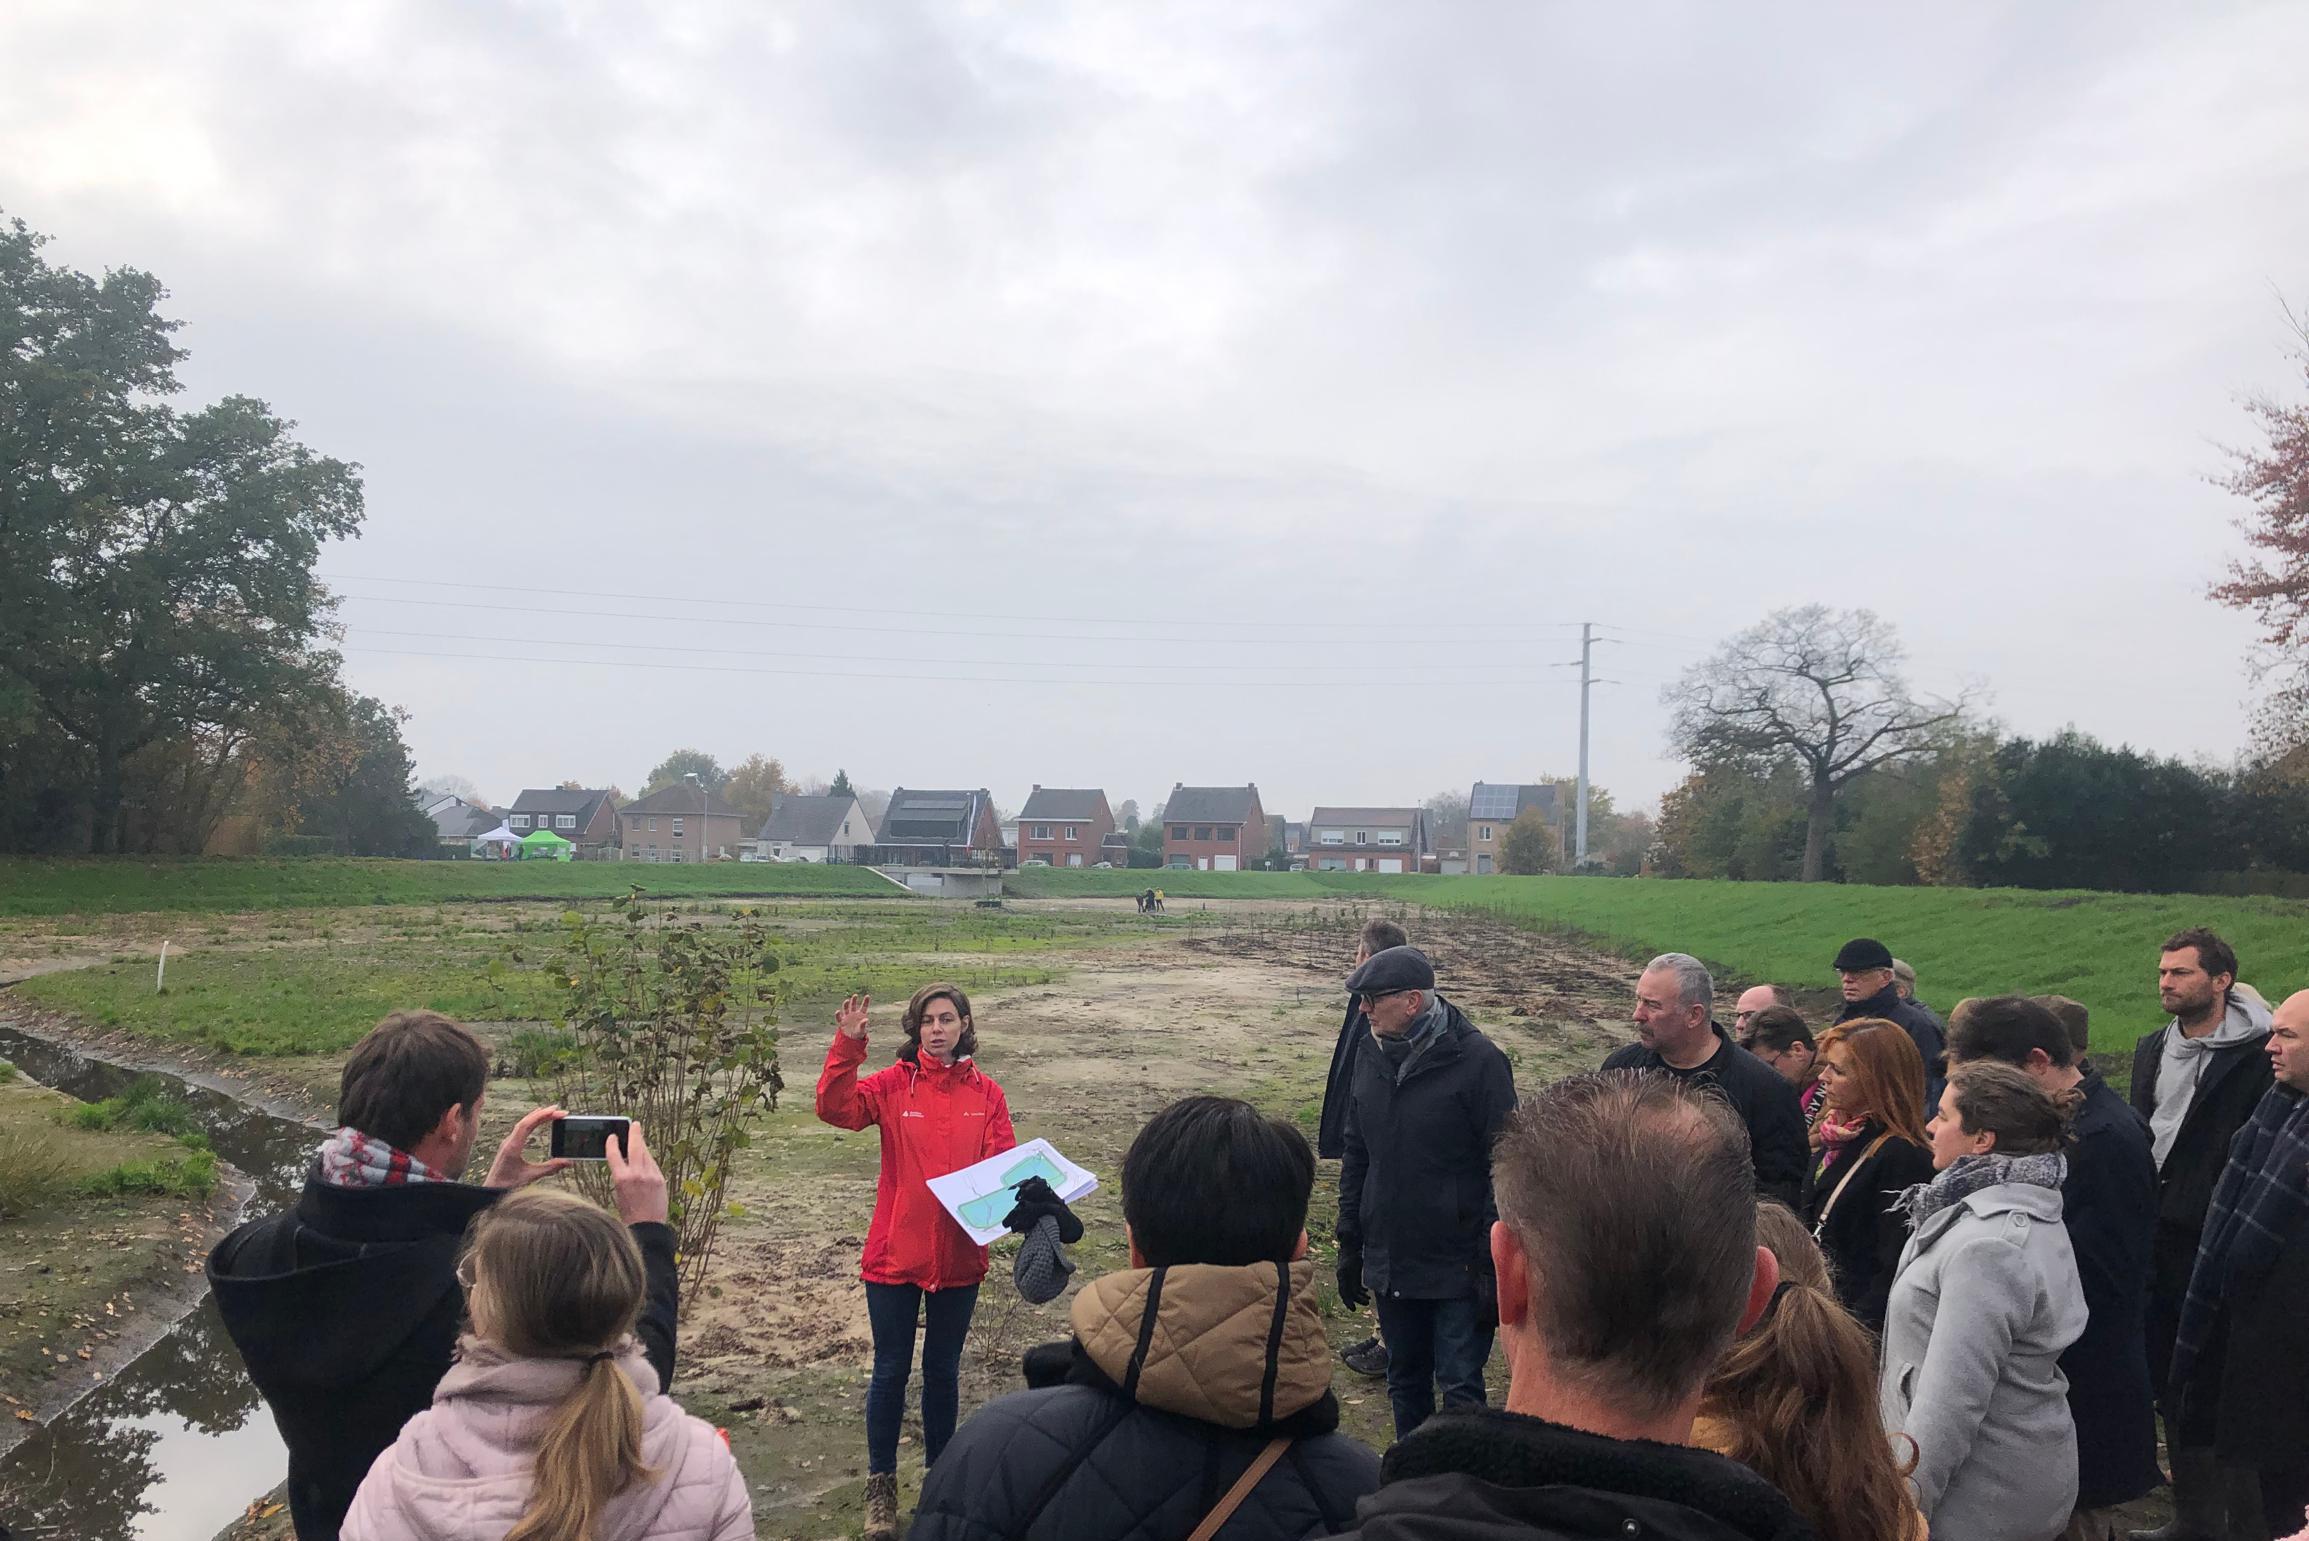 Einde Trekken Zonsverduistering Overstromingsgebied Laakland beschermt gemeente tegen wateroverlast: “Hier  kan 11.000 kubieke meter water opgevangen worden” (Beerse) | Gazet van  Antwerpen Mobile